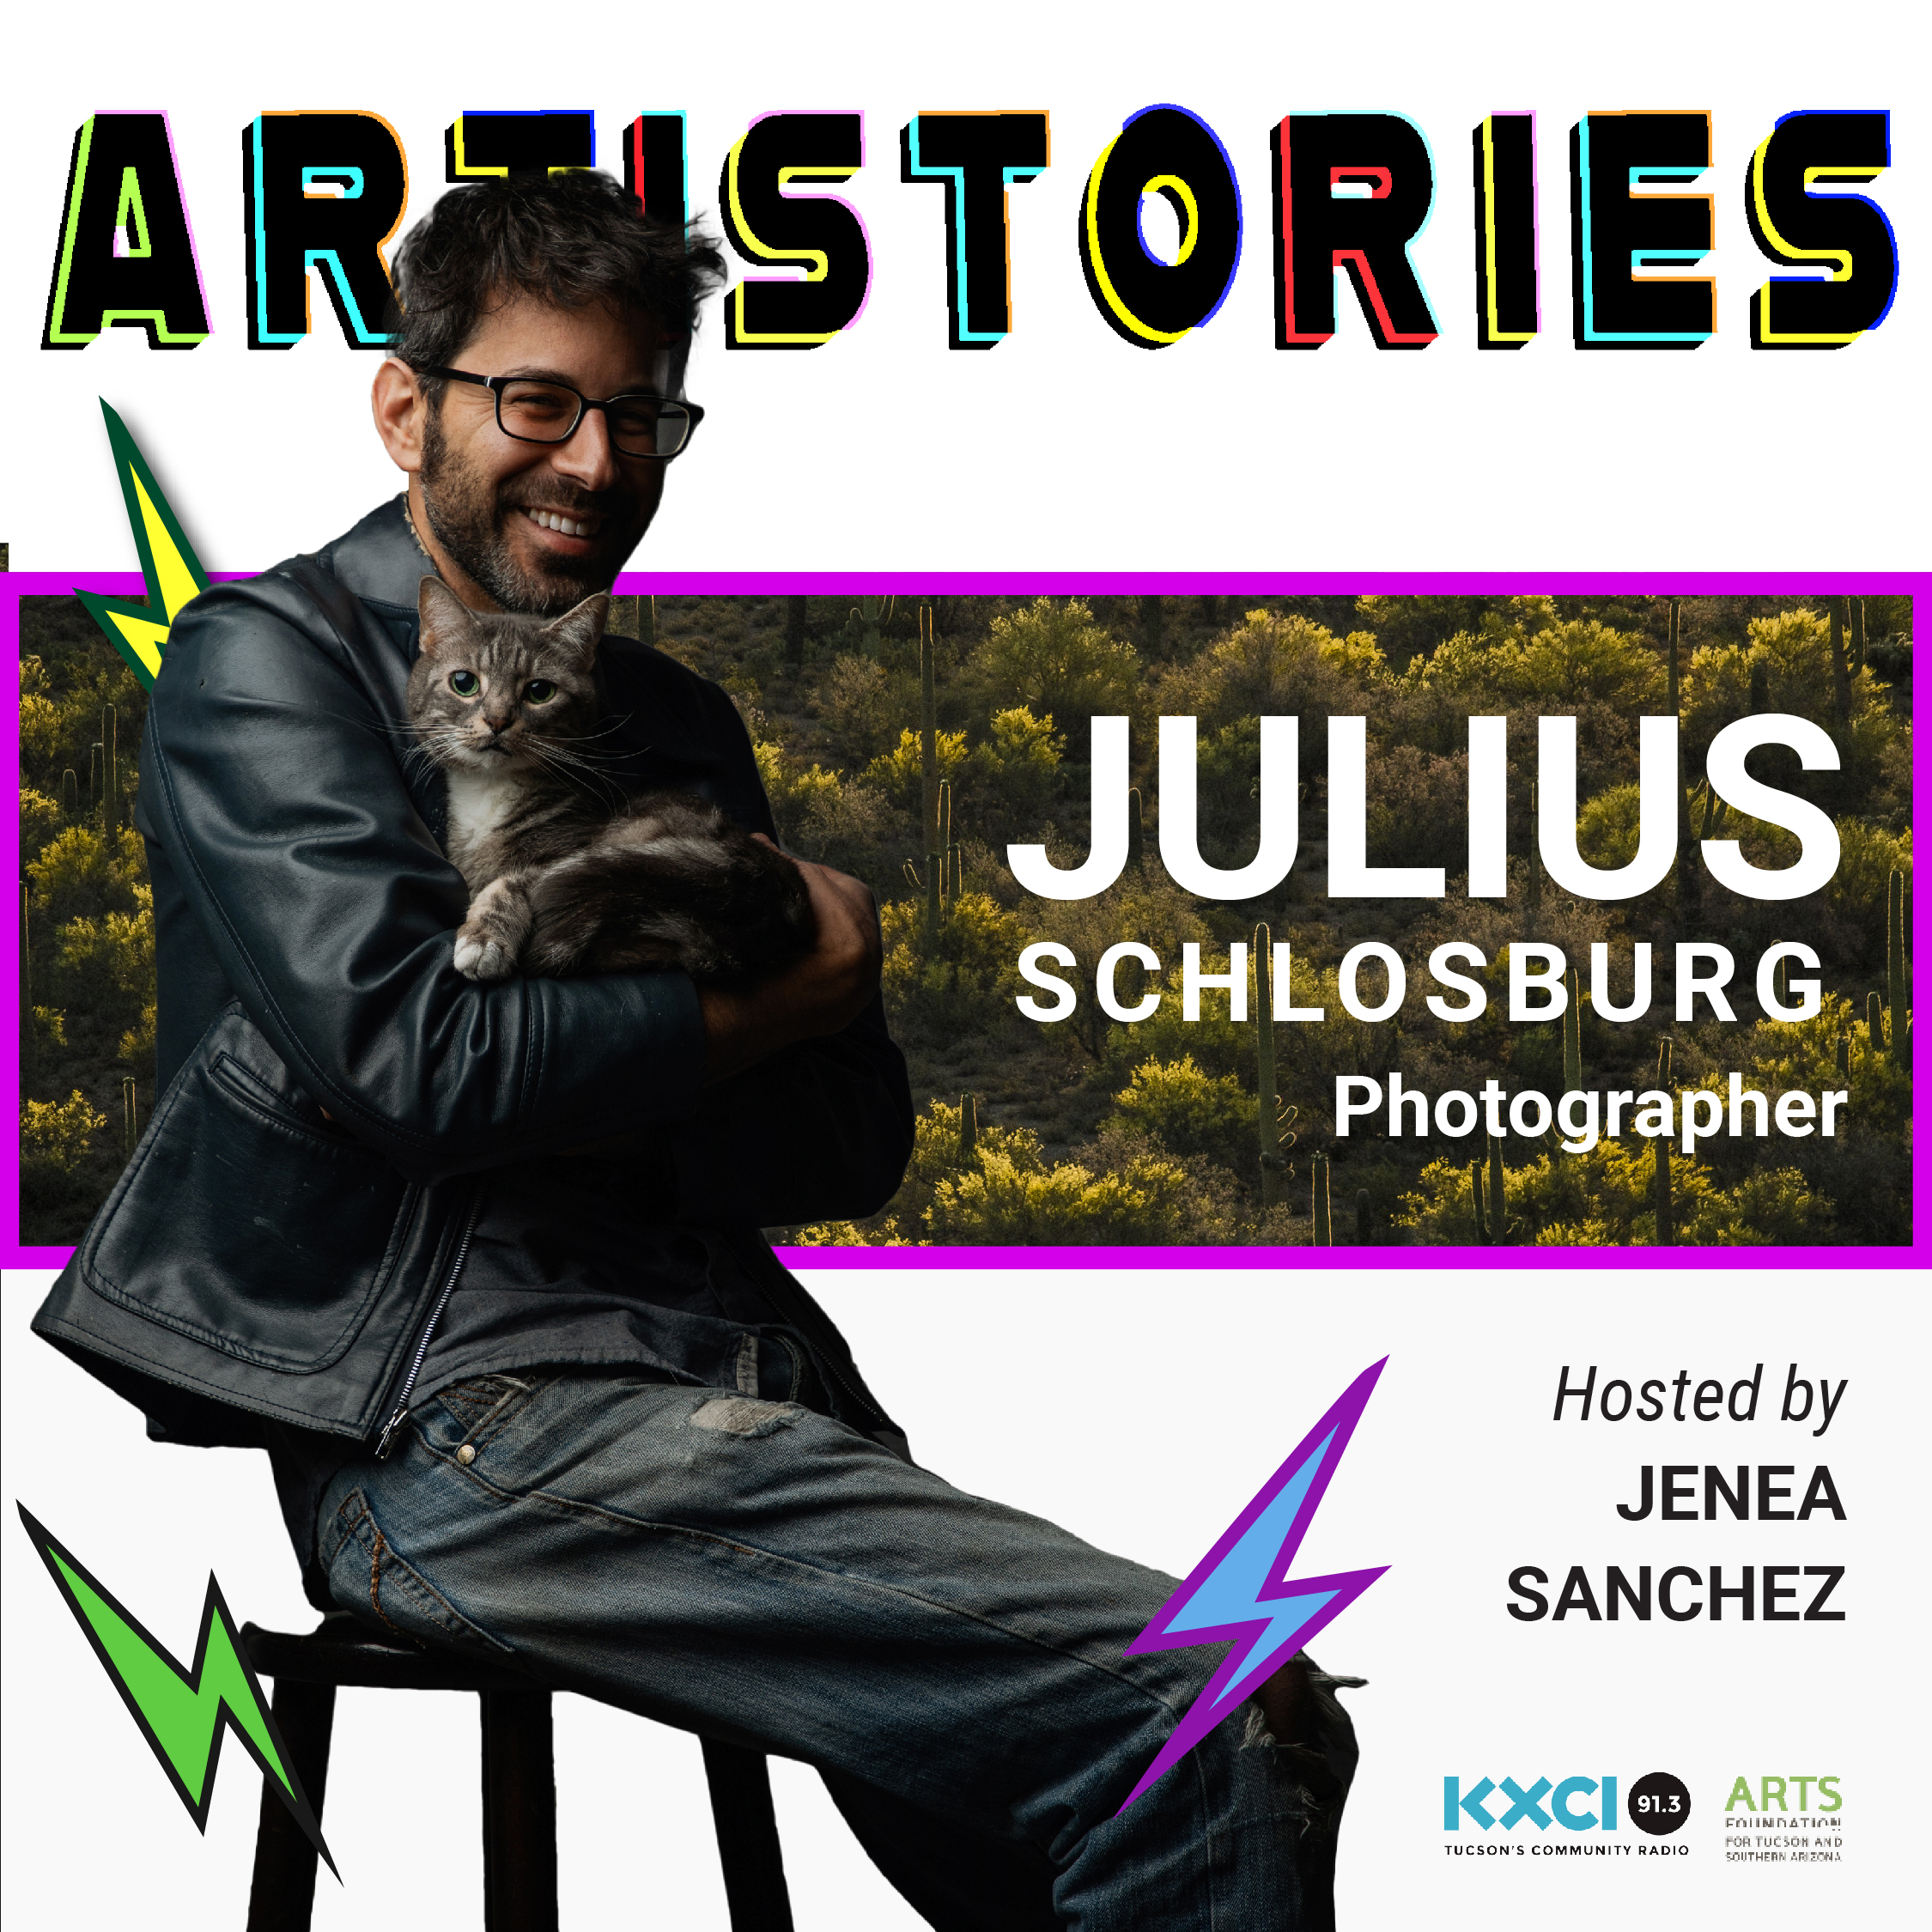 Julius Schlosburg - Photographer